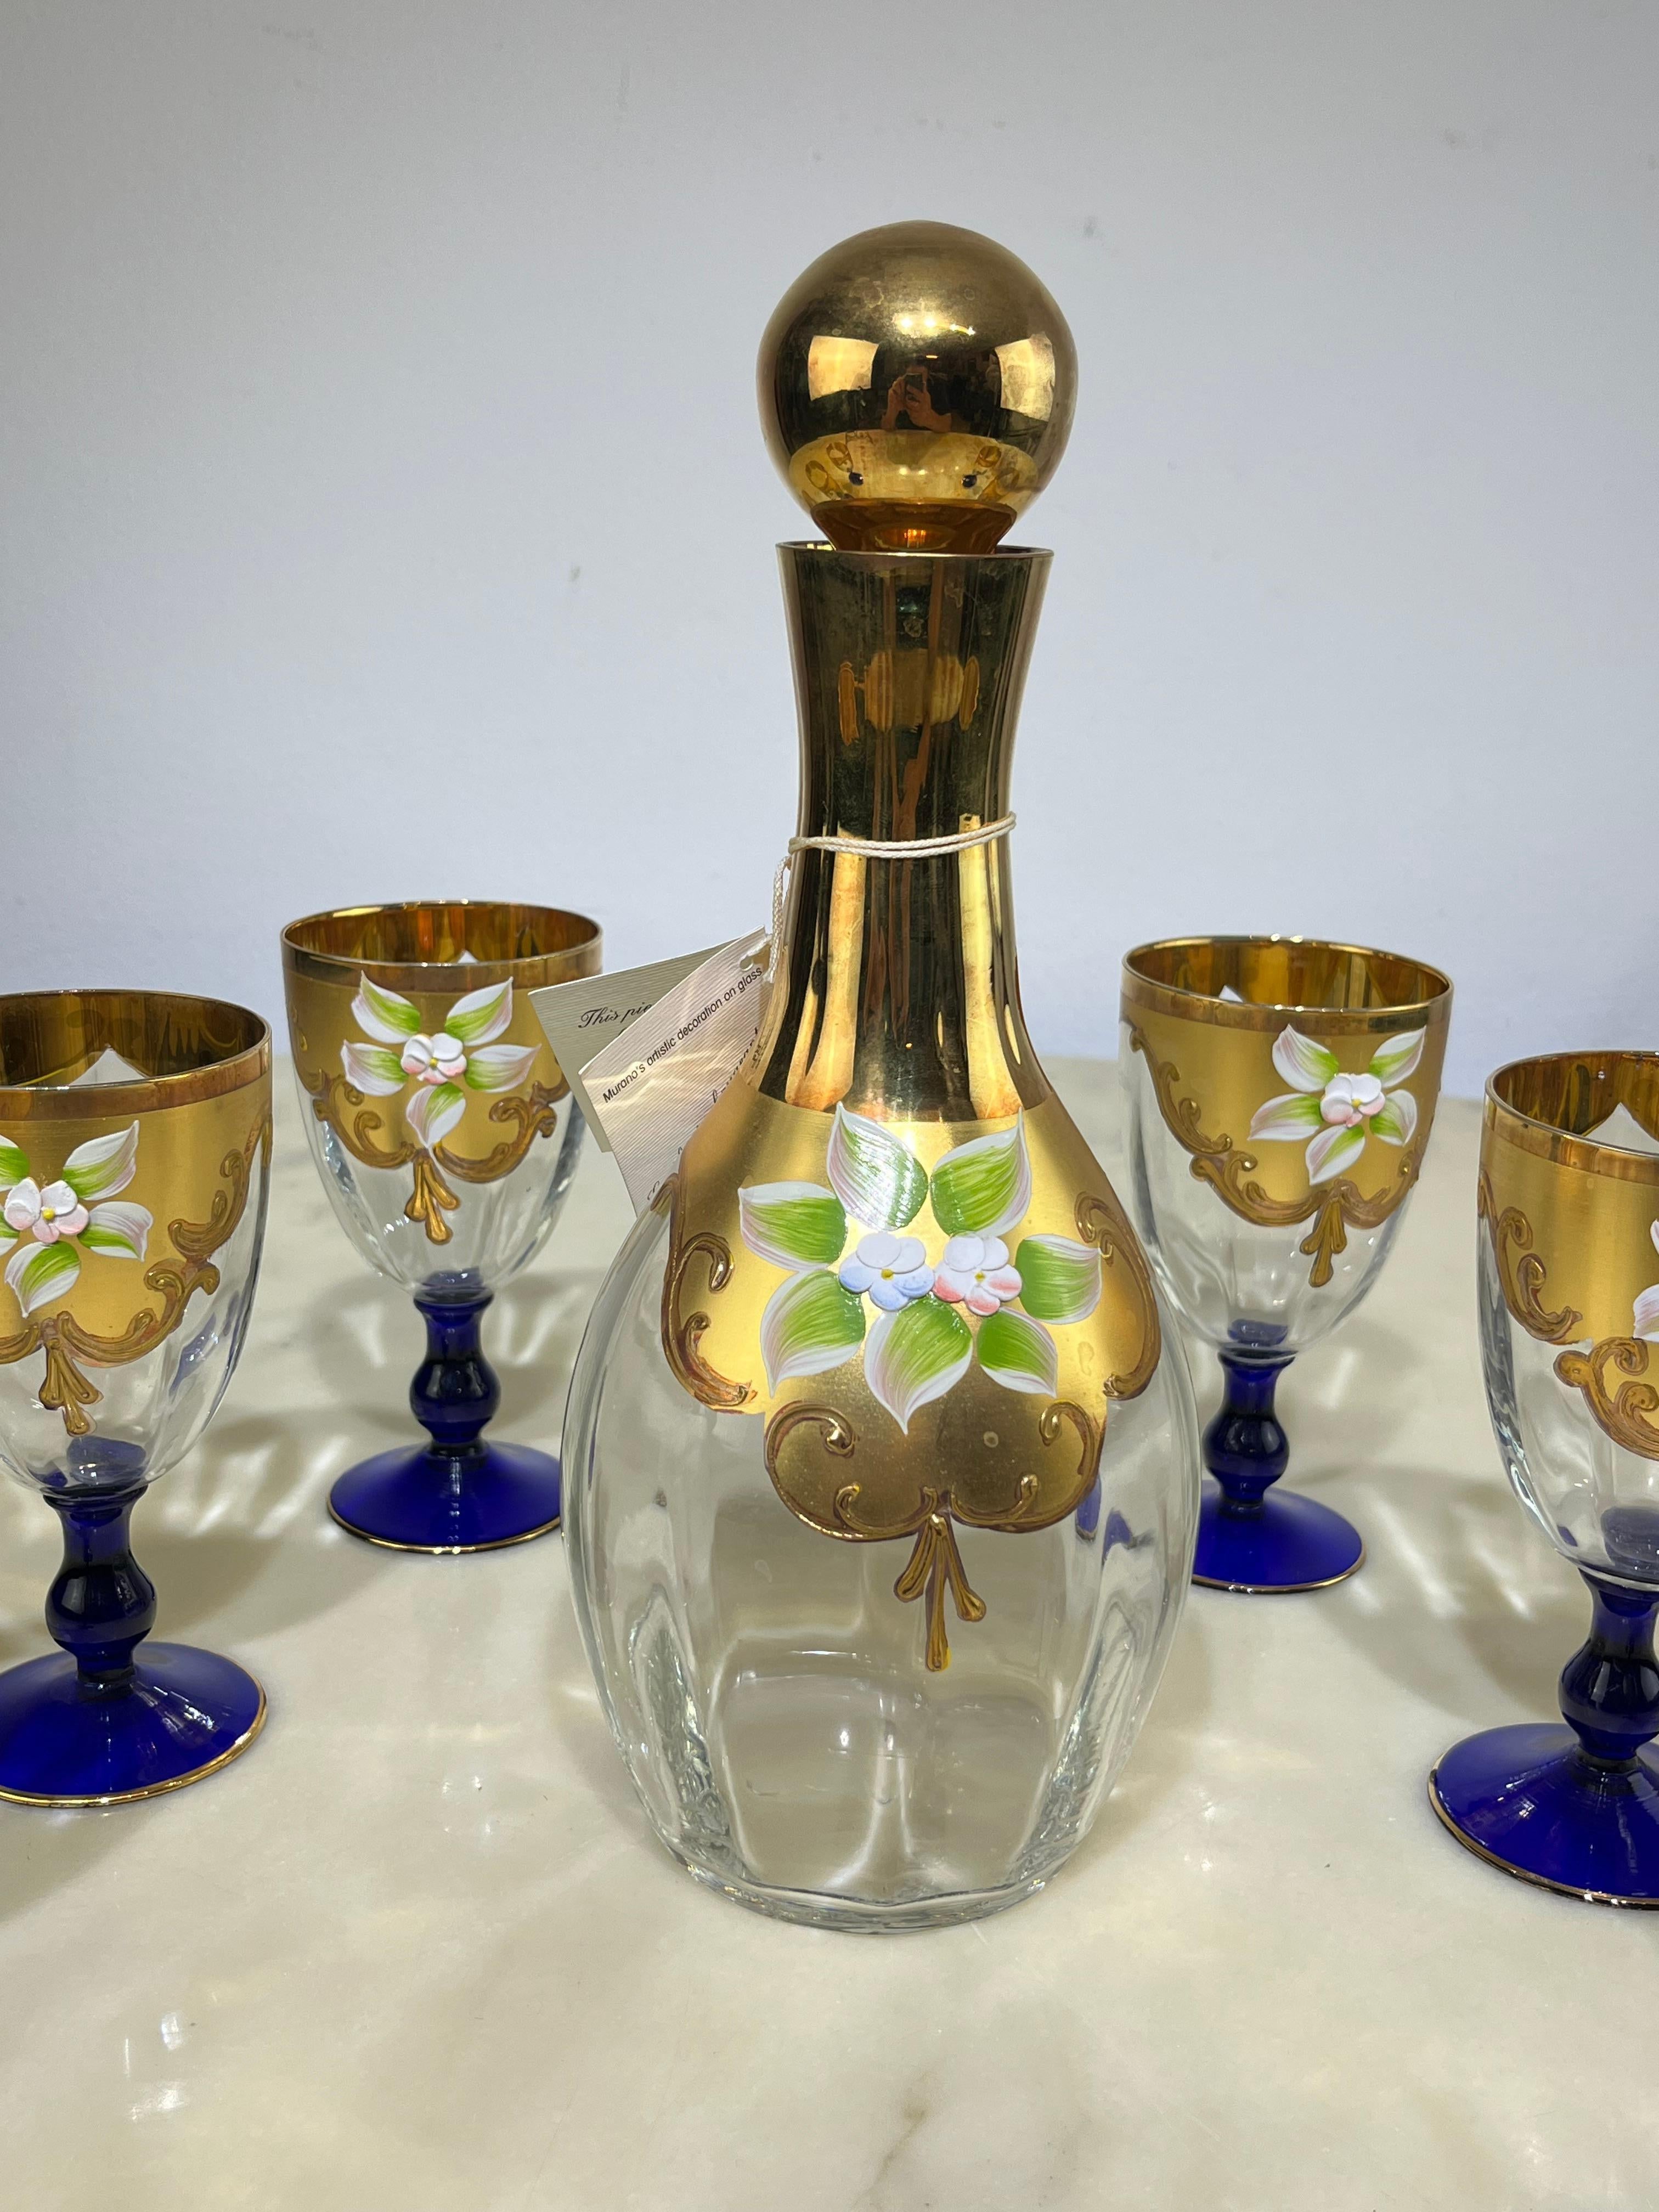 Set aus einer Flasche und sechs Gläsern aus handbemaltem Murano-Glas mit 24-karätigem Gold, Italien, 1970er Jahre
Hochzeitsgeschenk meiner Großeltern, Werk eines venezianischen Meisters. Die Flasche ist 28 cm hoch und hat einen Durchmesser von 11